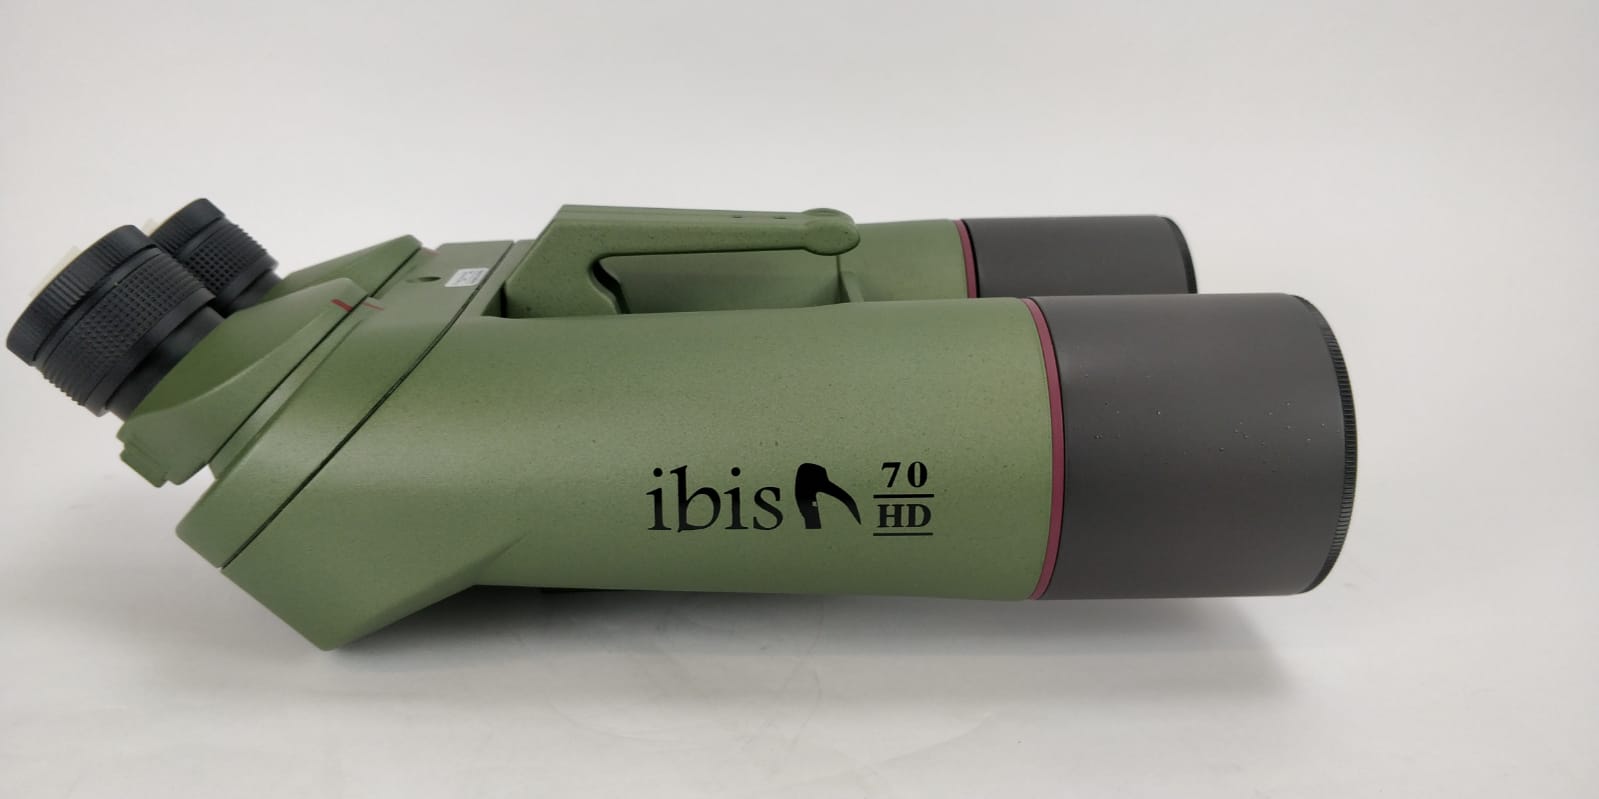  Binocolo angolato Ibis 70 HD 45°, compatto e leggero! Solo 3500 grammi Usato, ottime condizioni 